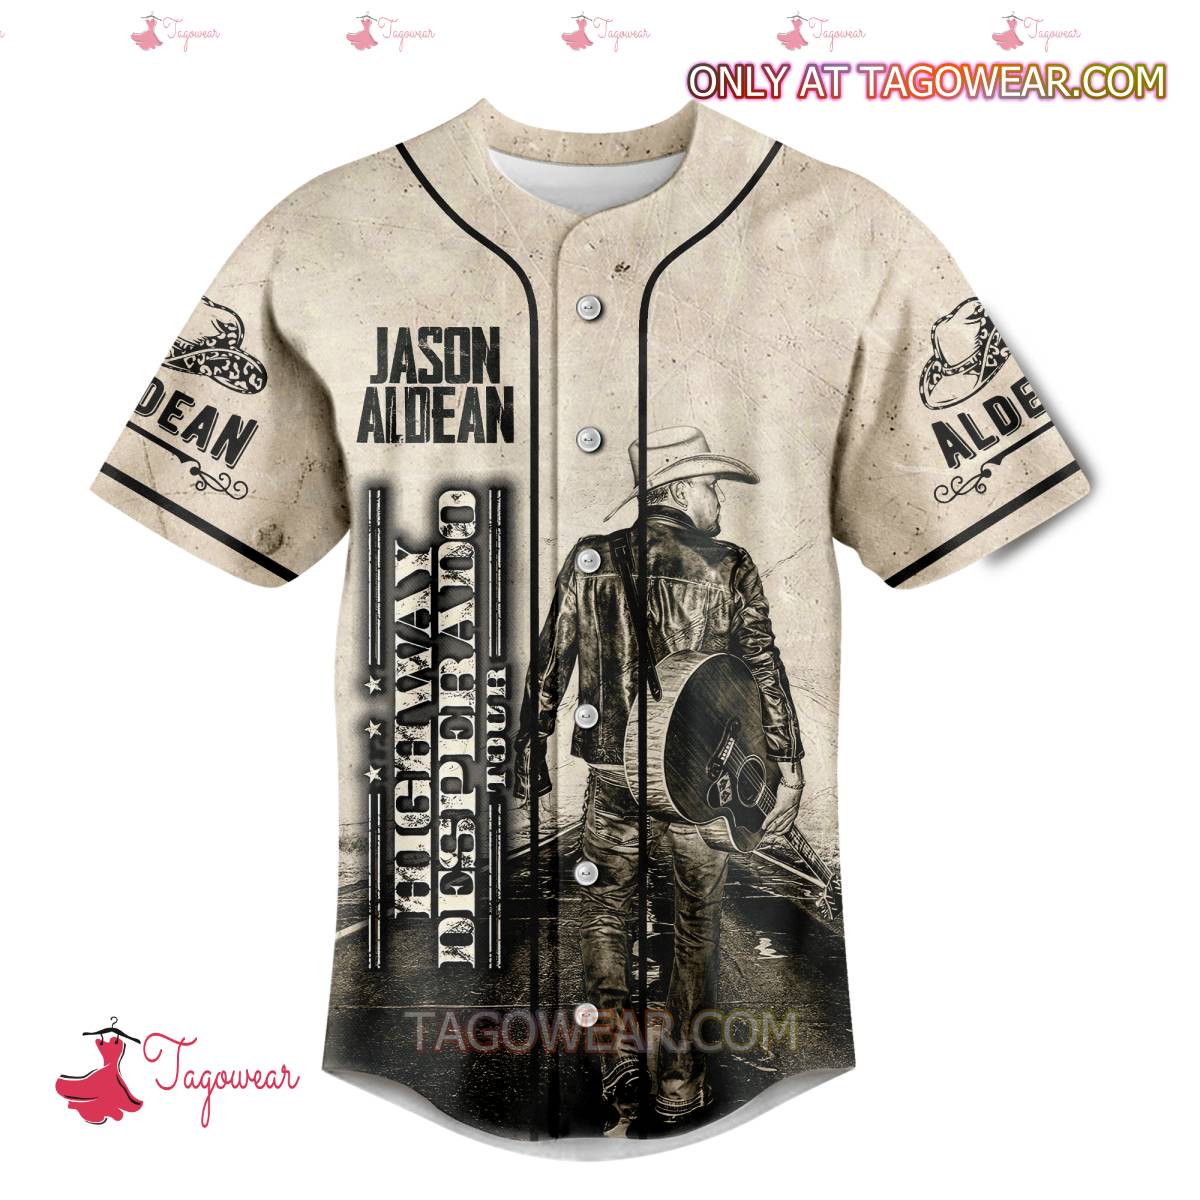 Jason Aldean Highway Desperado Tour Baseball Jersey a